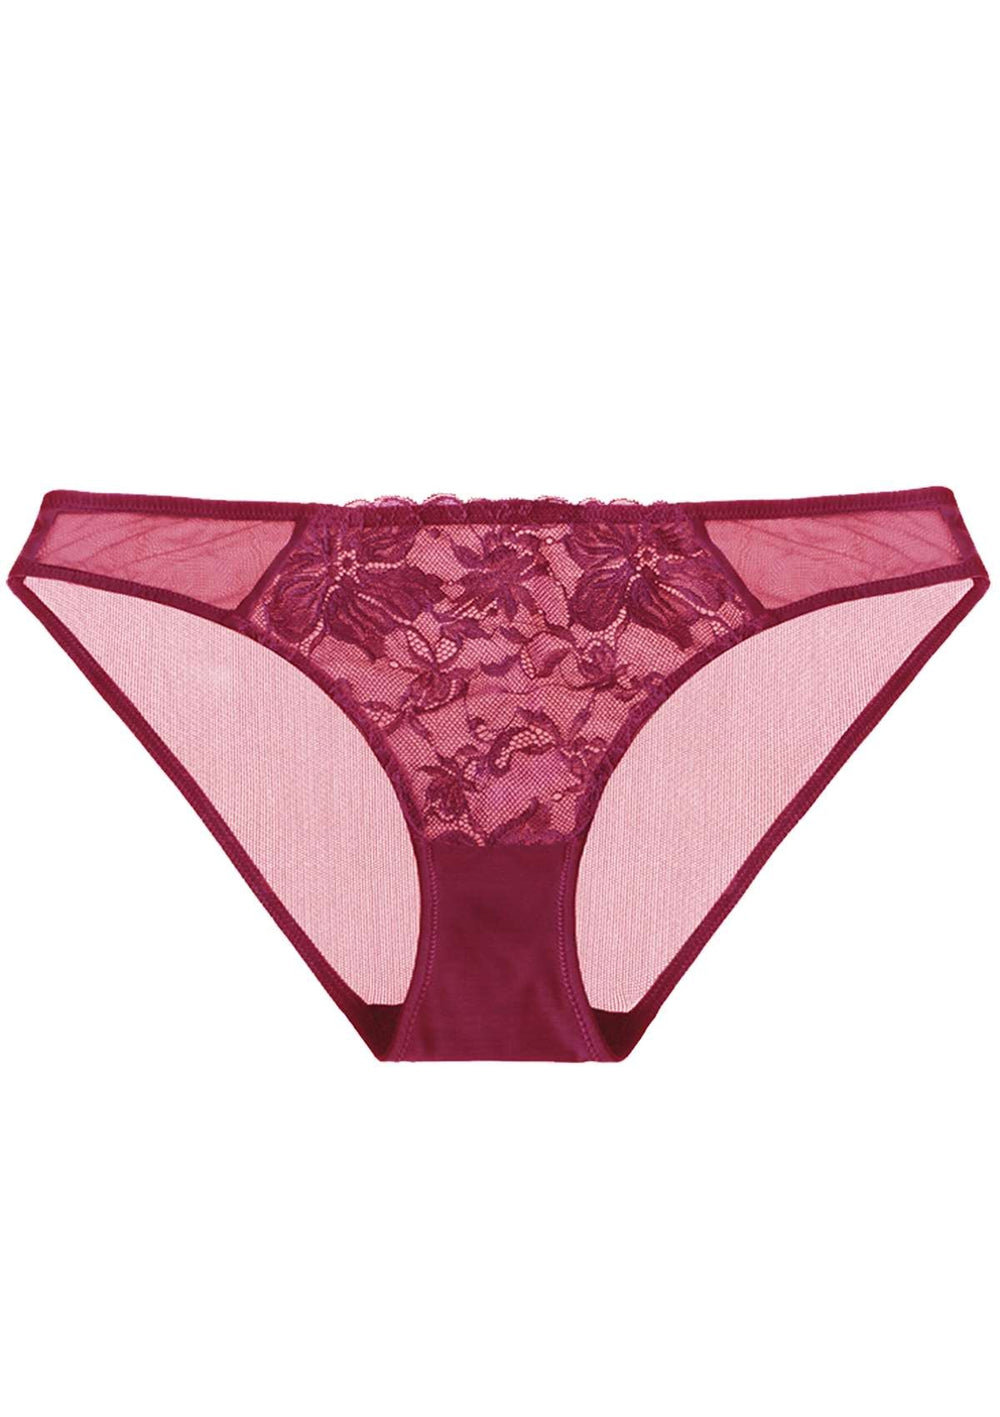 HSIA Pretty In Petals Mid-Rise Sexy Stylish Lace MESH Underwear